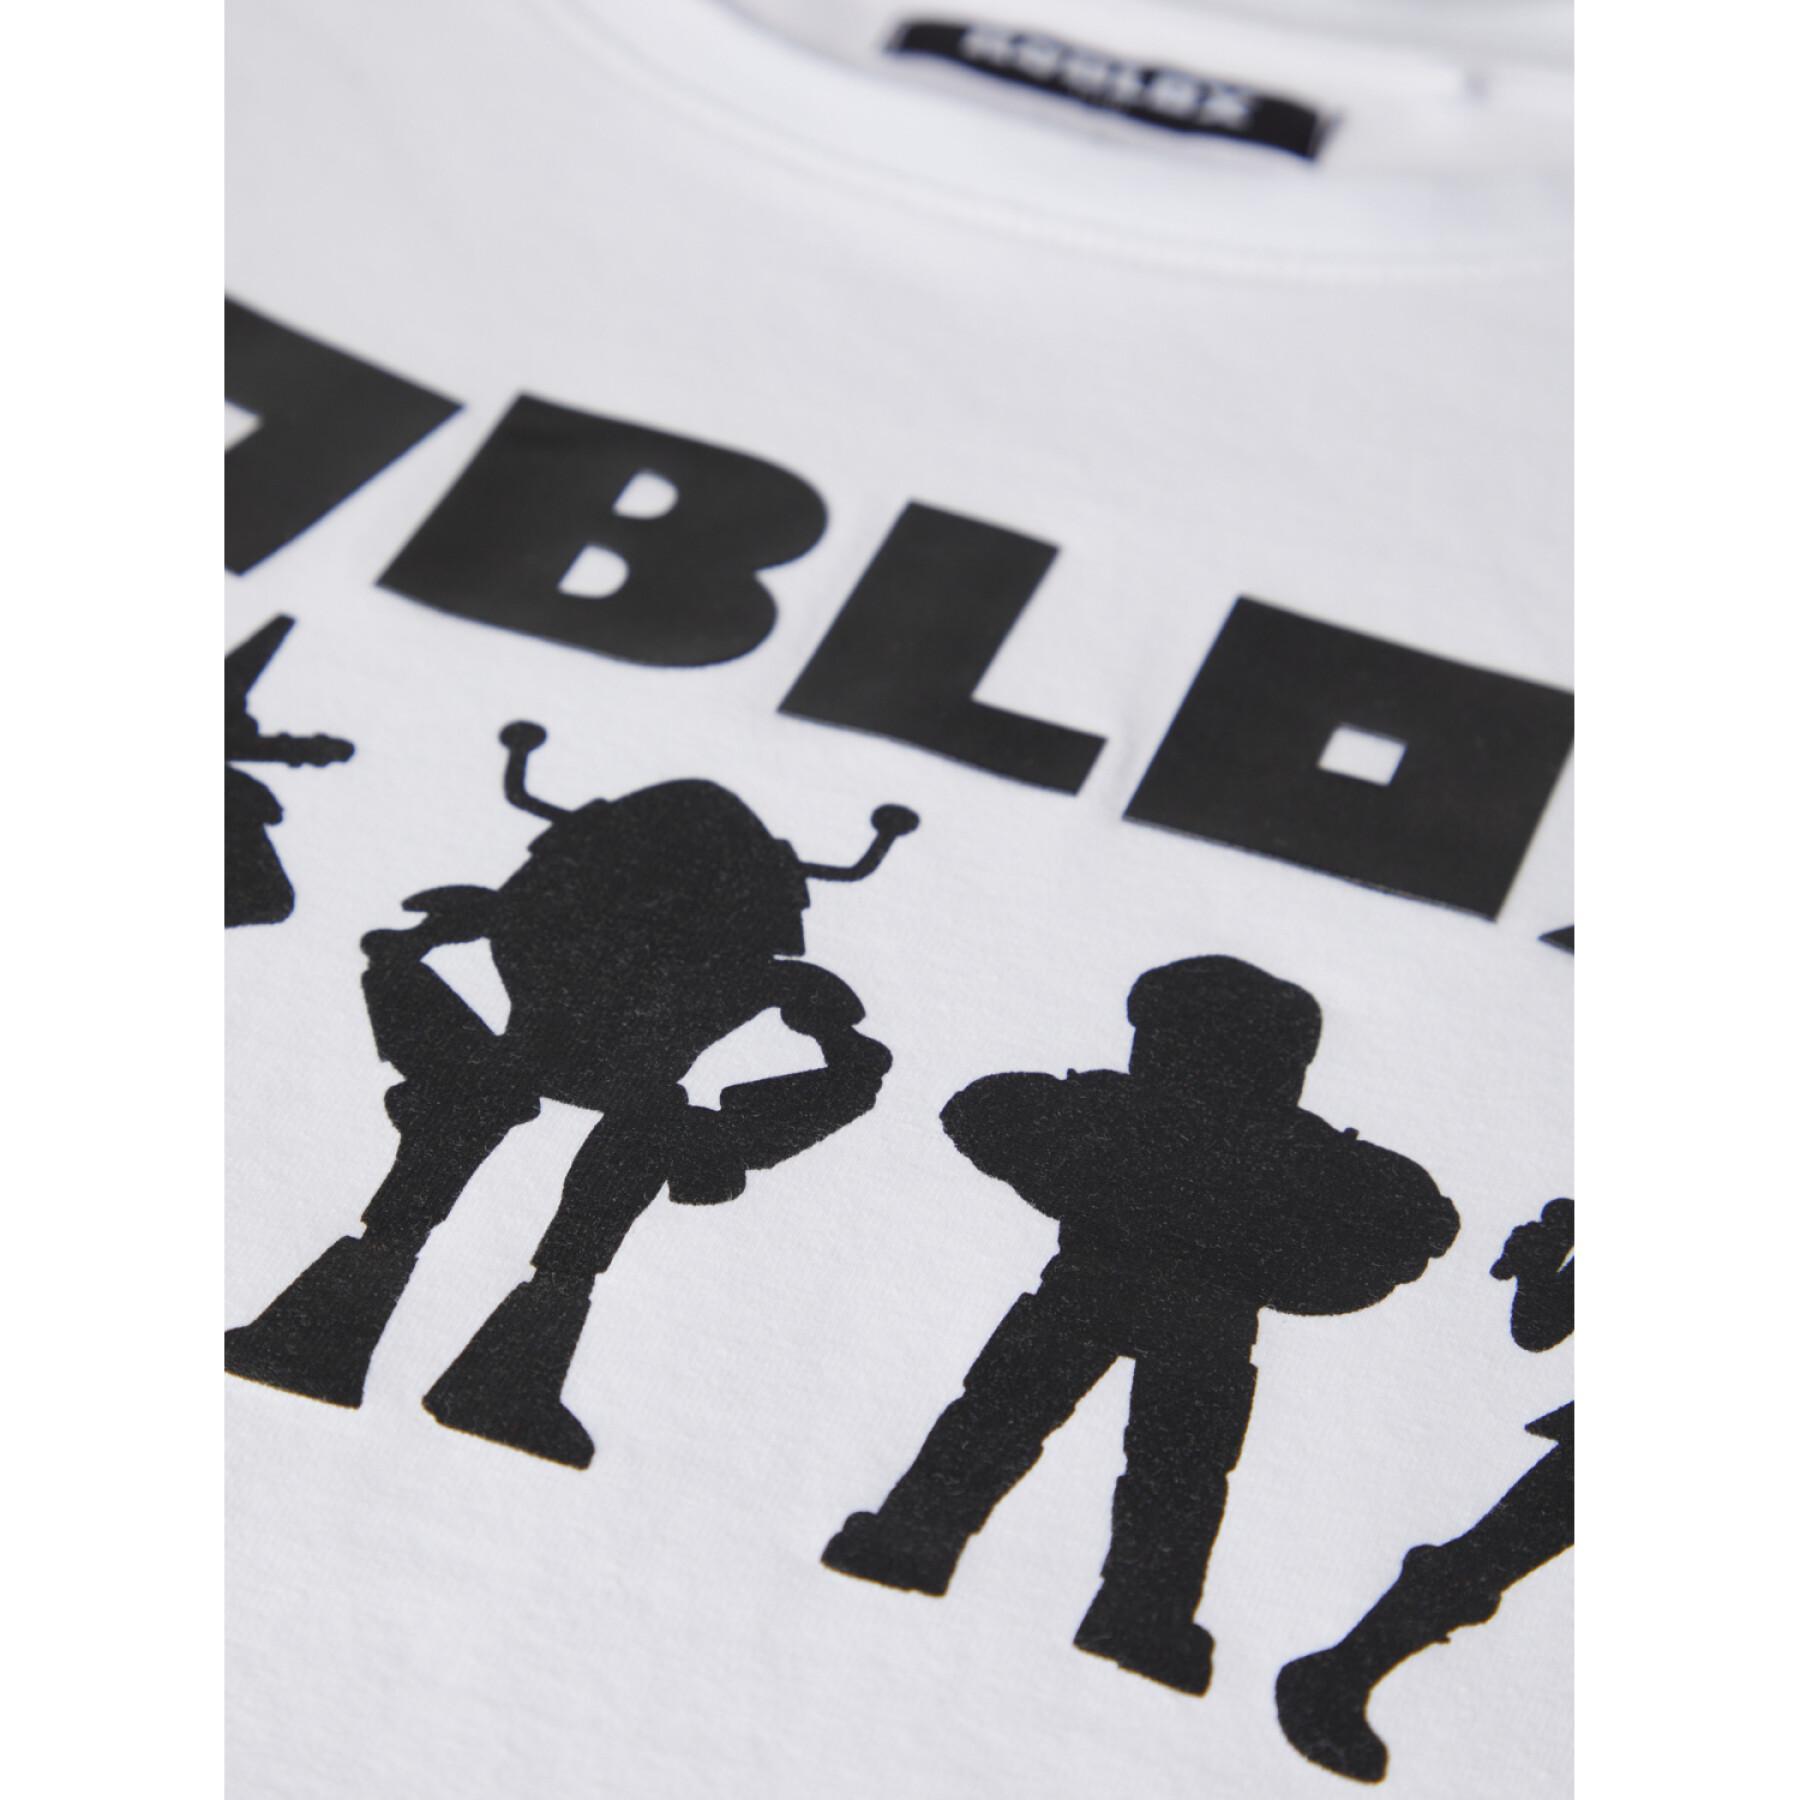 T-shirt de criança Name it Roblox Nash Bio